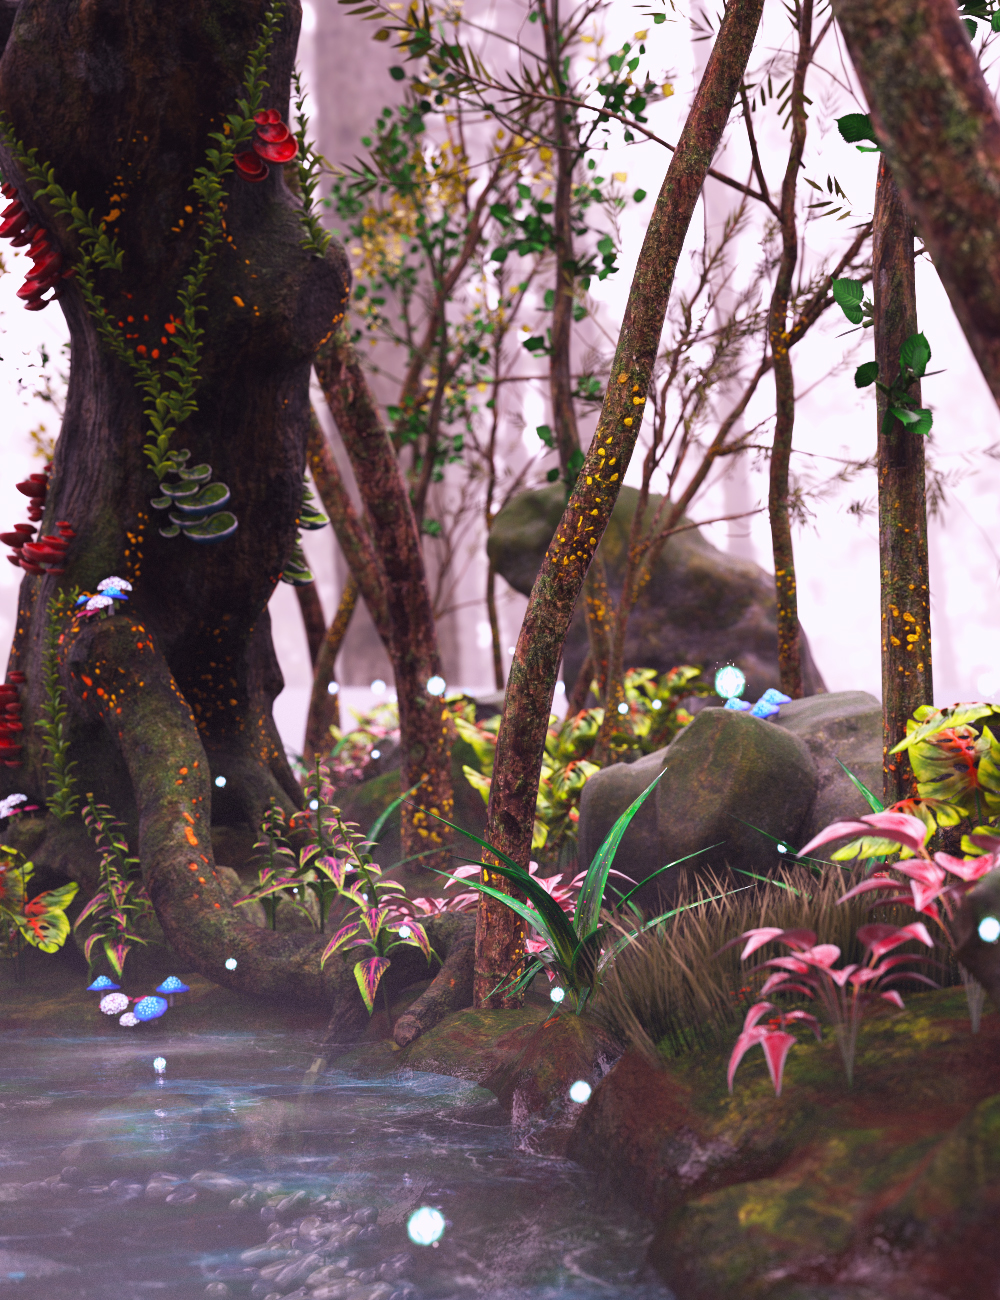 XI Elven Forest Vignette by: Xivon, 3D Models by Daz 3D